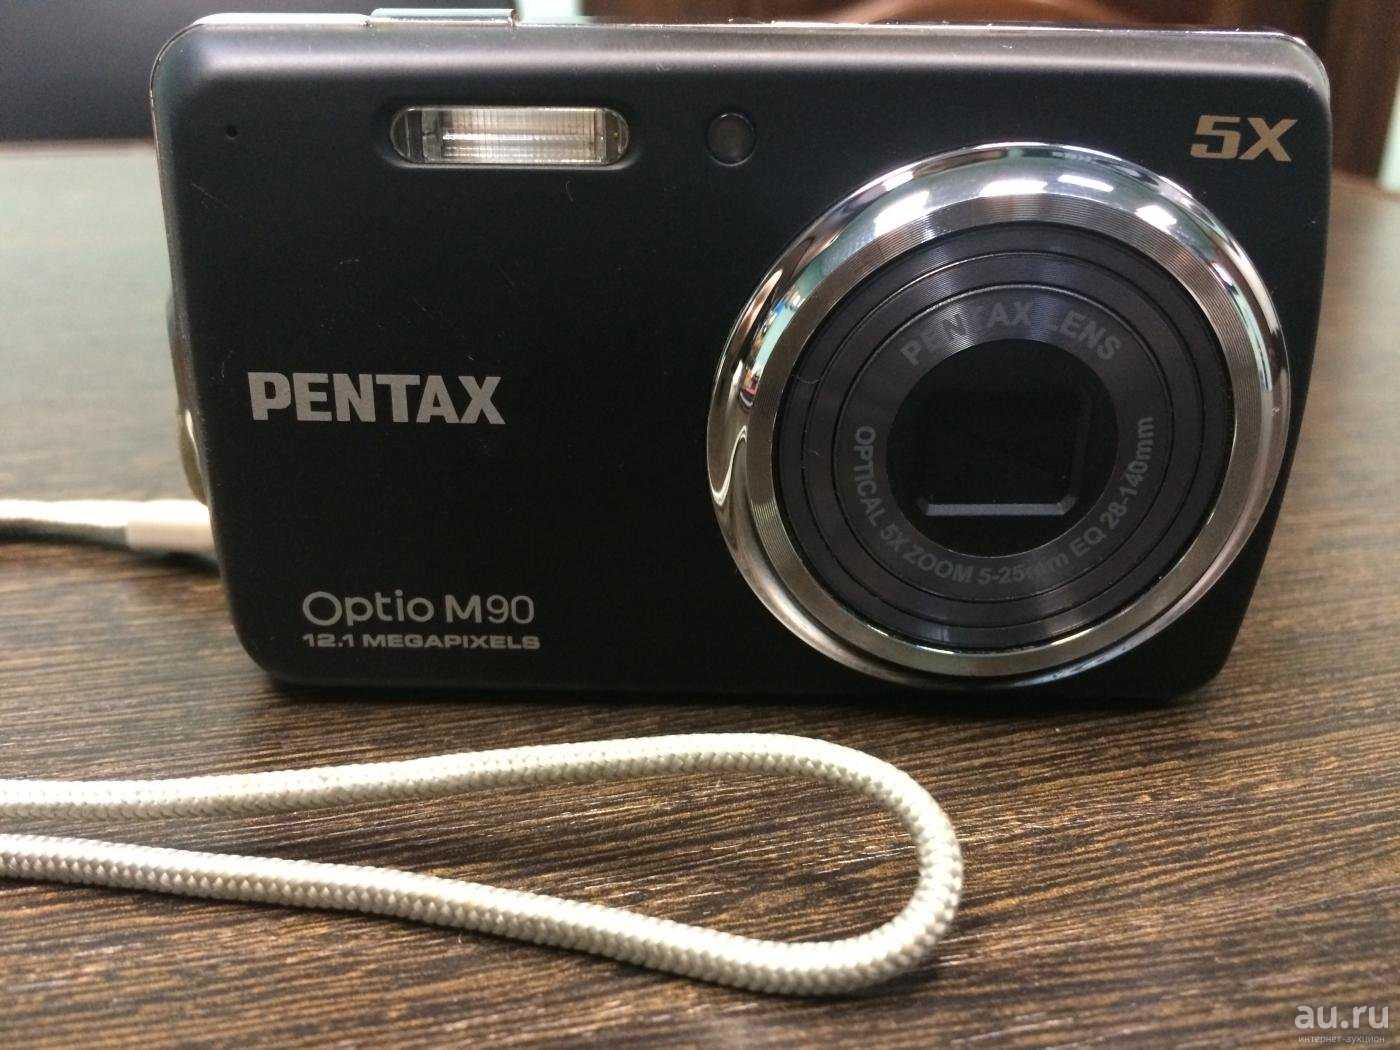 Фотоаппарат pentax (пентакс) optio s50: купить недорого в москве, 2021.